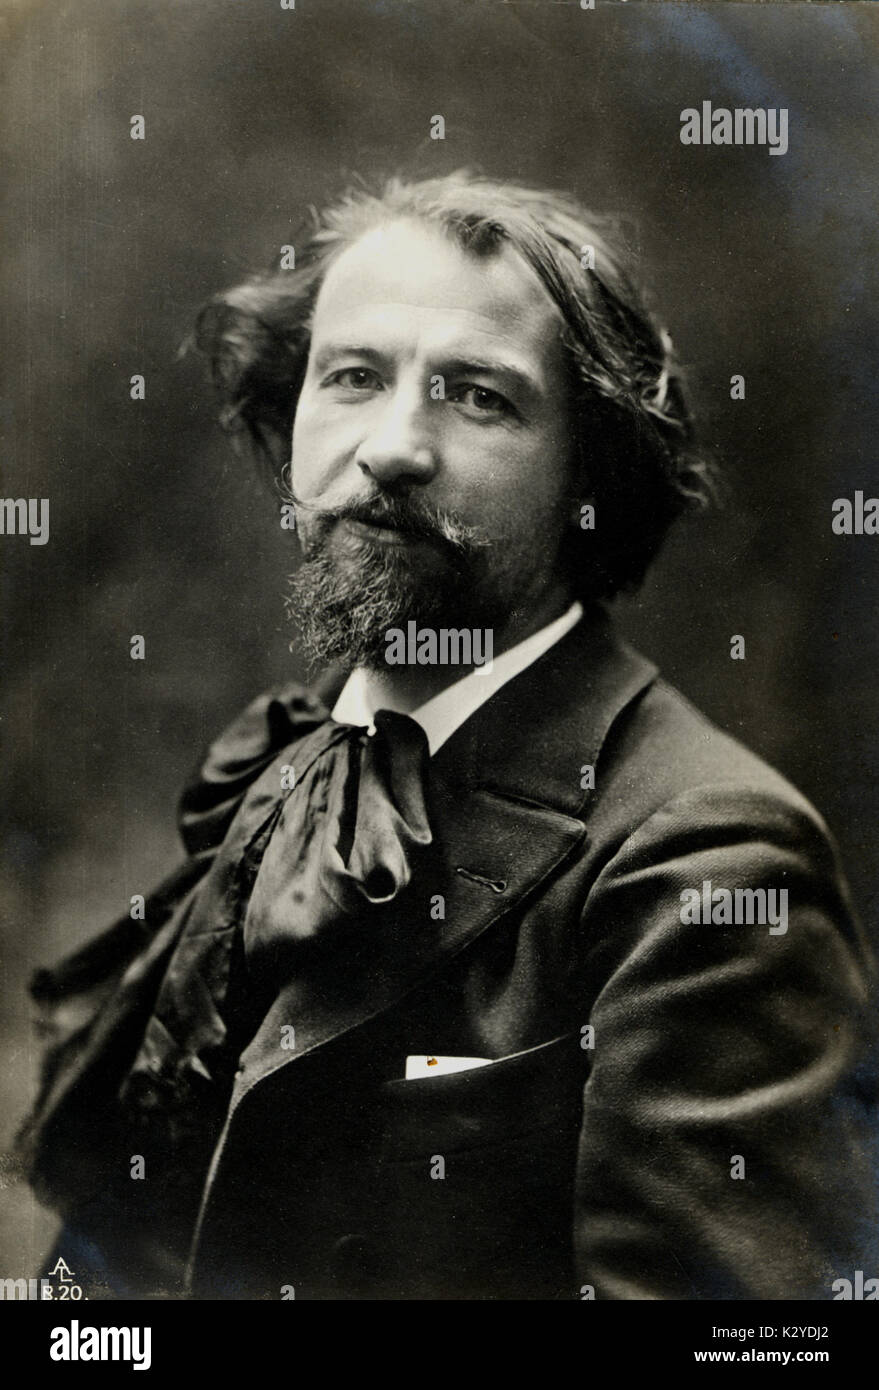 CHARPENTIER, Gustave französische Komponist und Musikkritiker, 1880-1960 Stockfoto